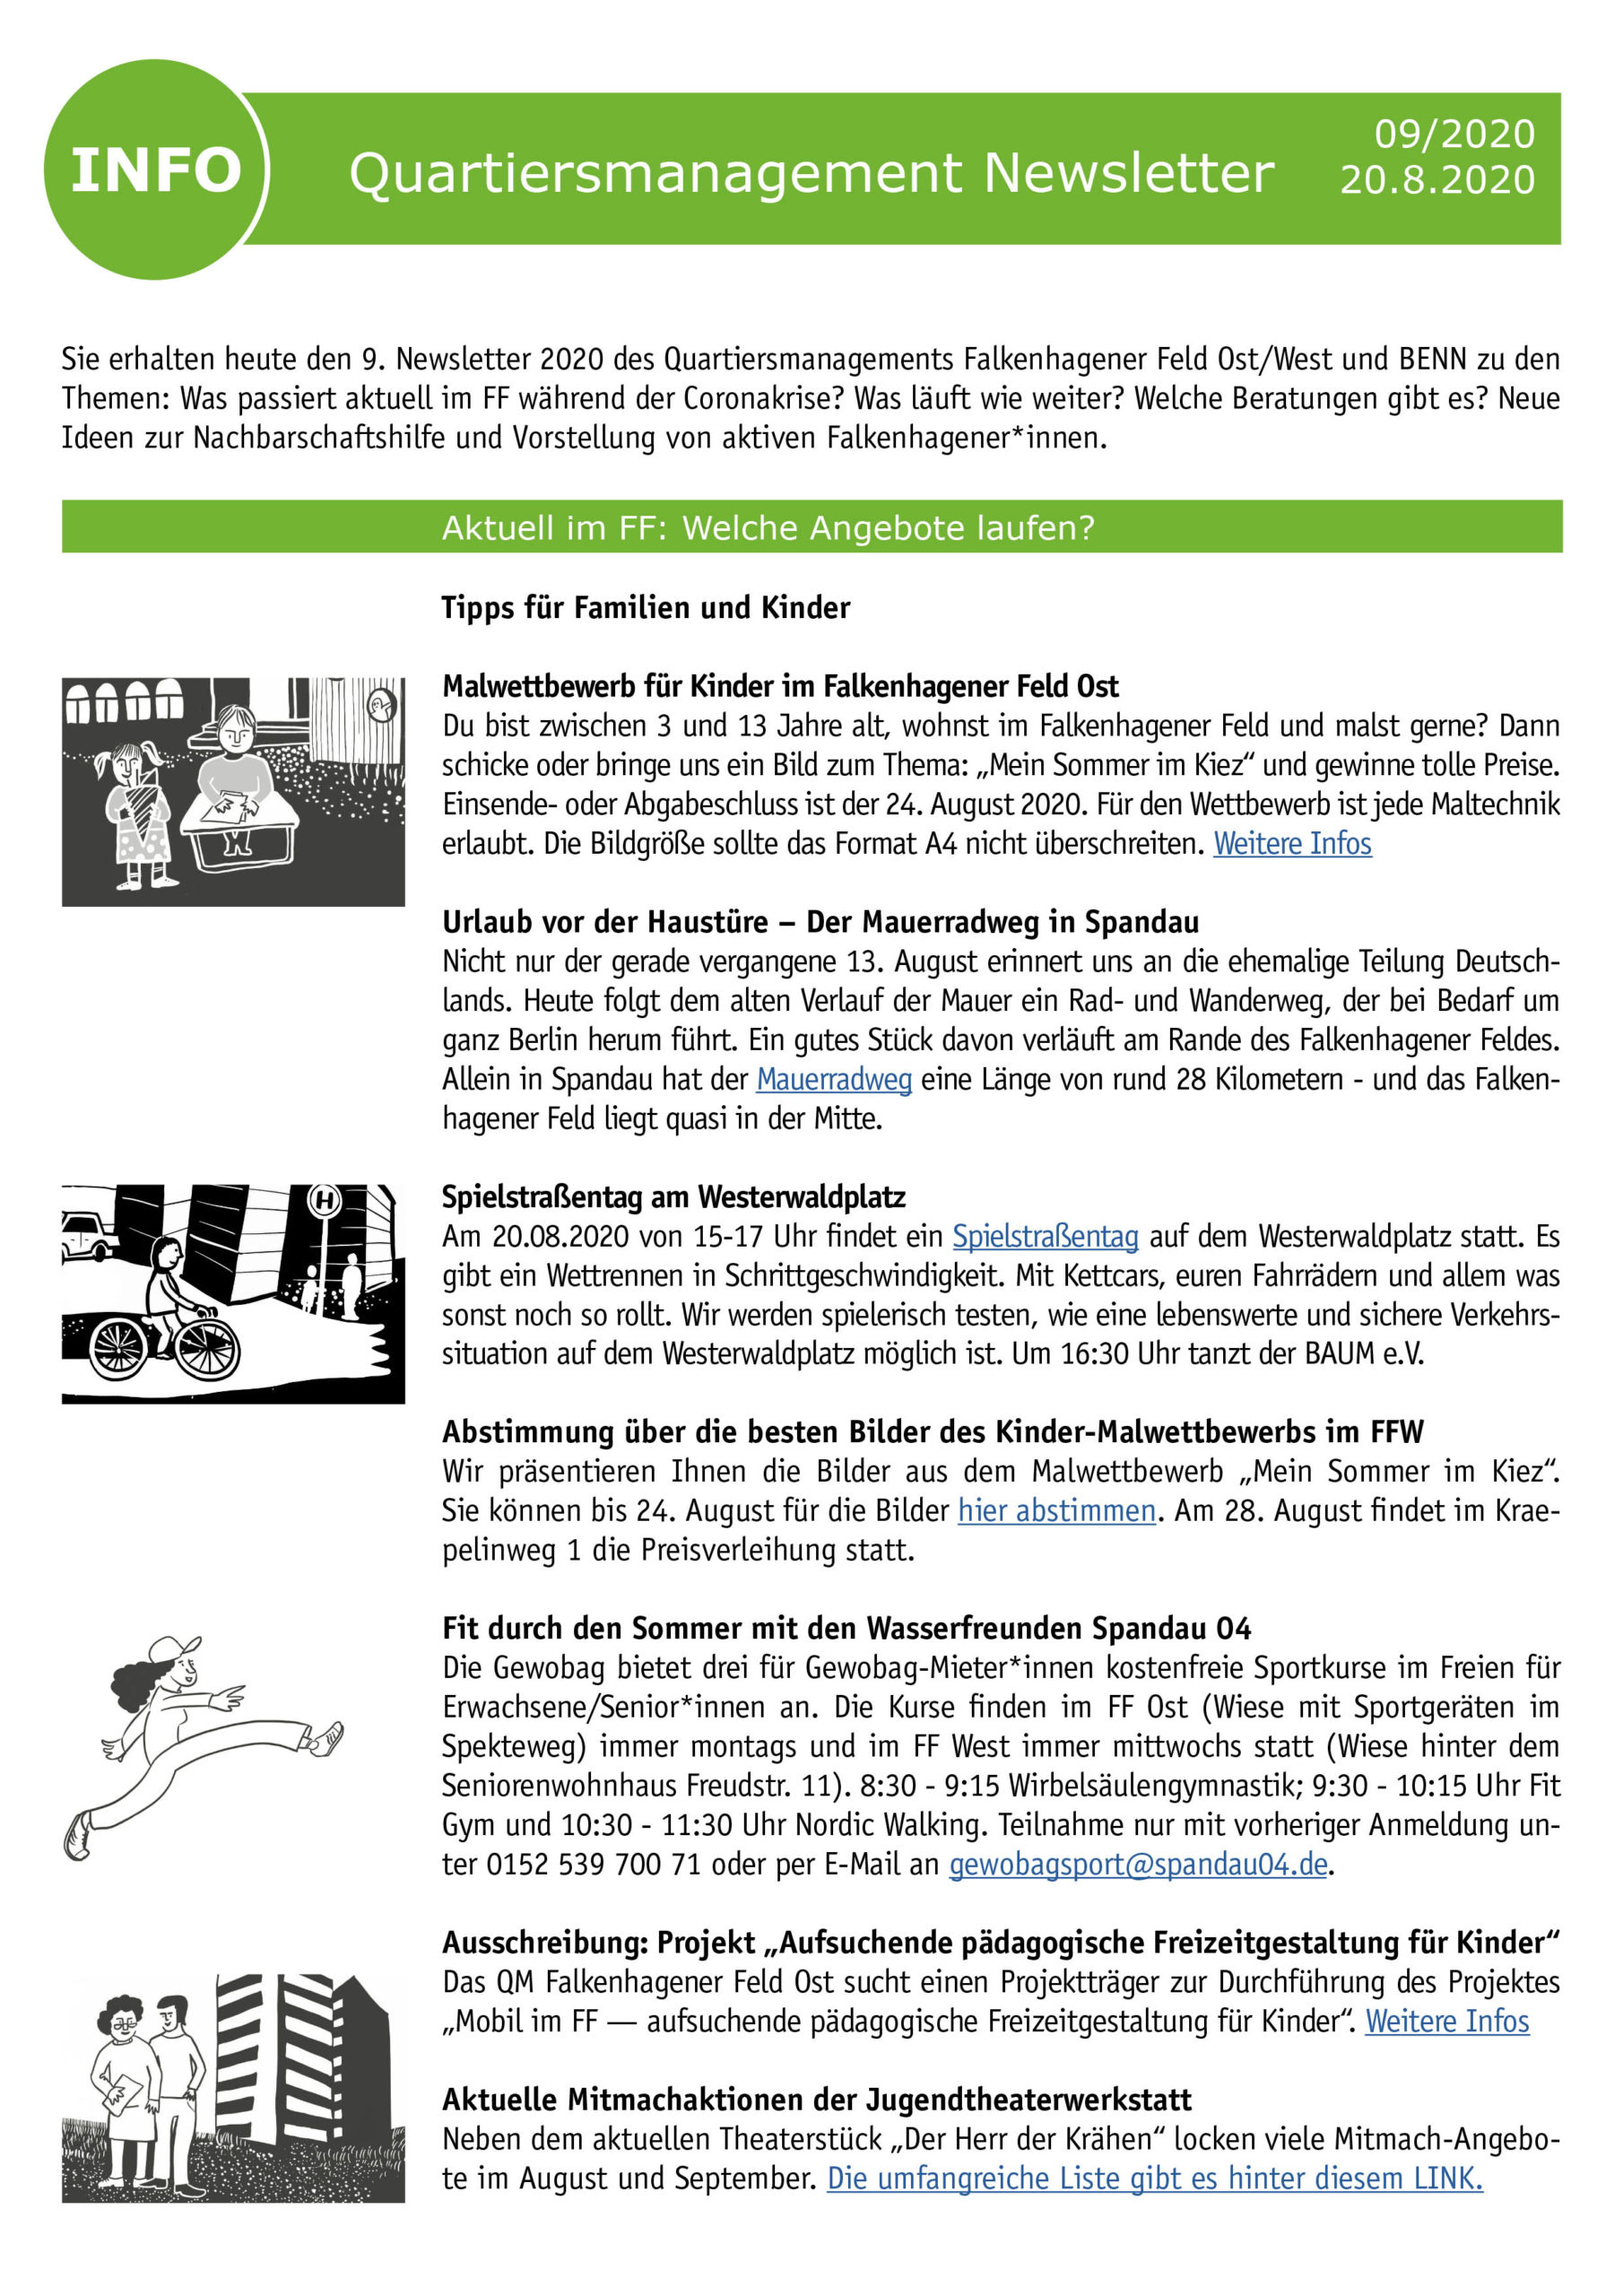 QM-Newsletter Nr. 9 – Informationen auch während der Corona-Pandemie